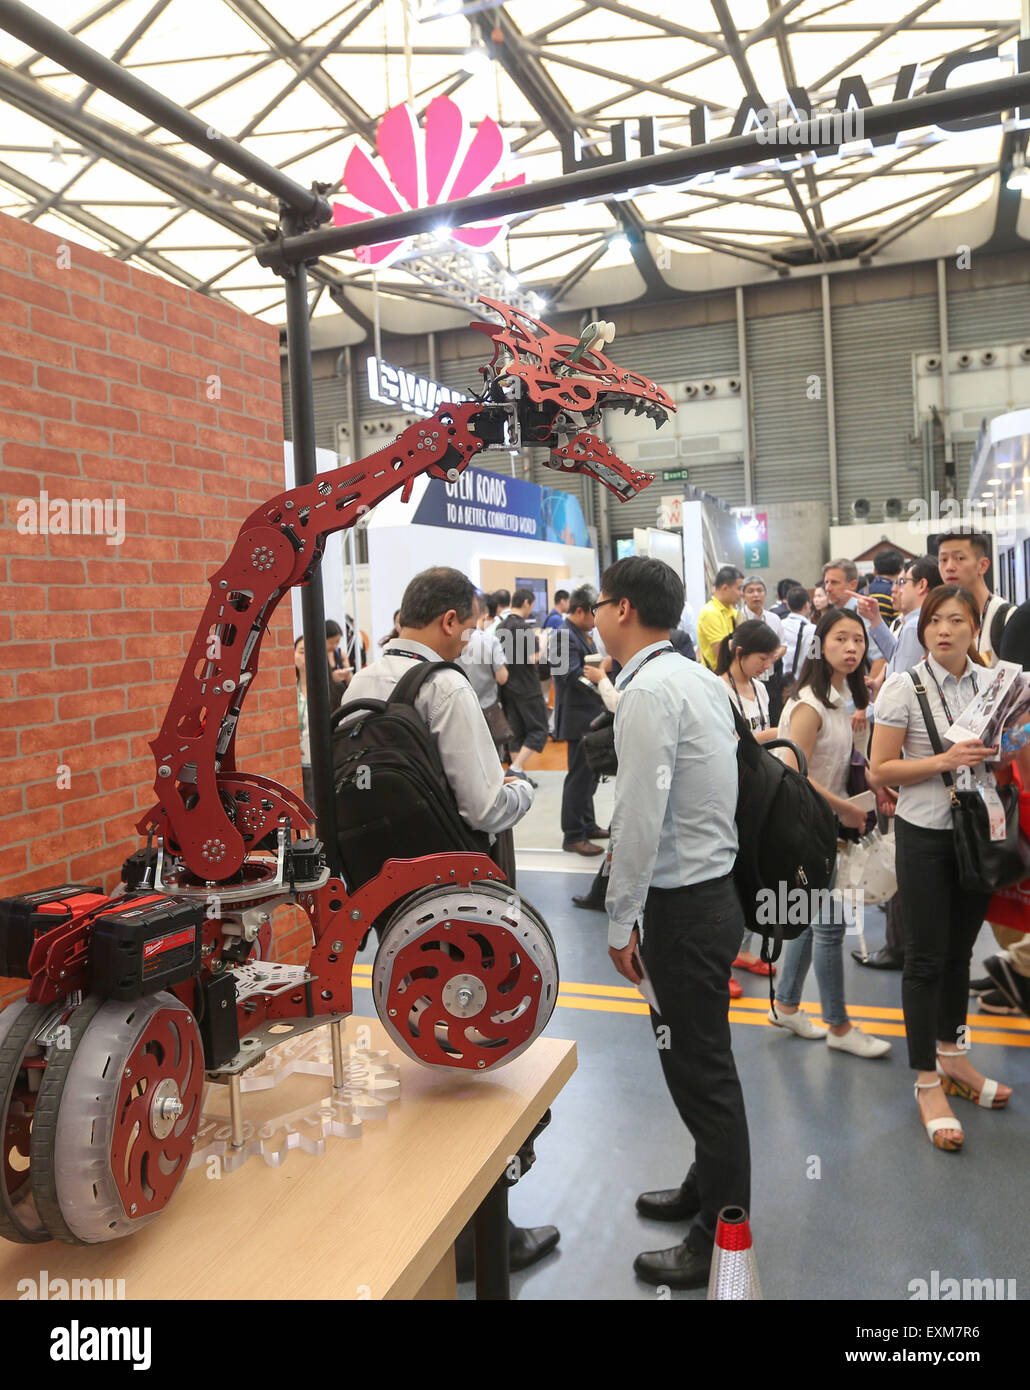 Shanghai, Chine. 15 juillet, 2015. Spectateurs regarder un robot, le Mobile World Congress (MWC) avec le thème de l'Infini Mobile à Shanghai, la Chine orientale, le 15 juillet 2015. © Ding Ting/Xinhua/Alamy Live News Banque D'Images